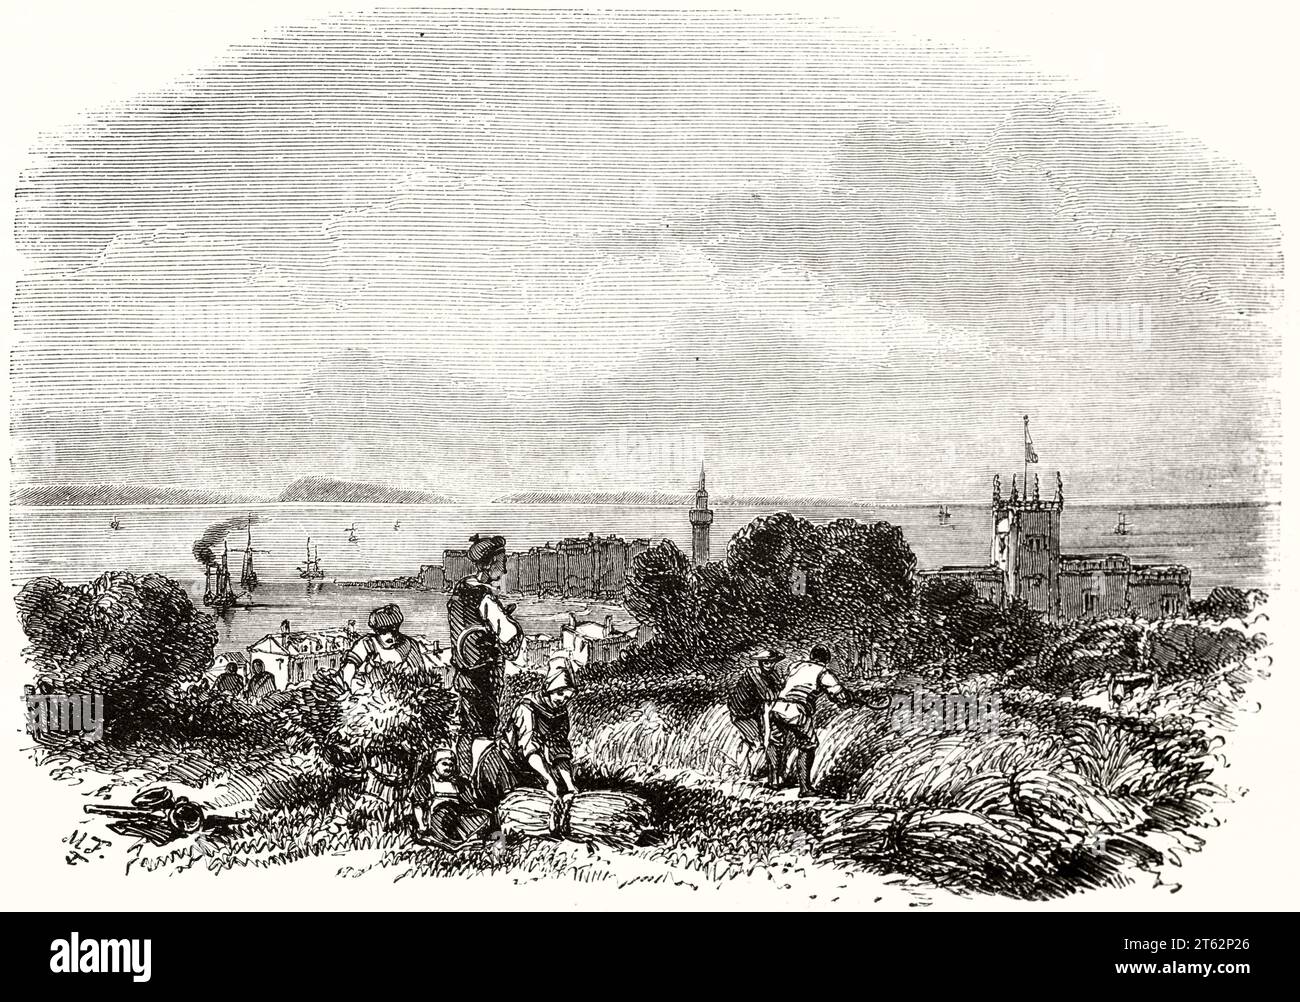 Alte Aussicht auf Saint Peter Port, Guernsey, englischer Kanal. Von Morel-Fatio, publ. Auf Magasin Pittoresque, Paris, 1849 Stockfoto